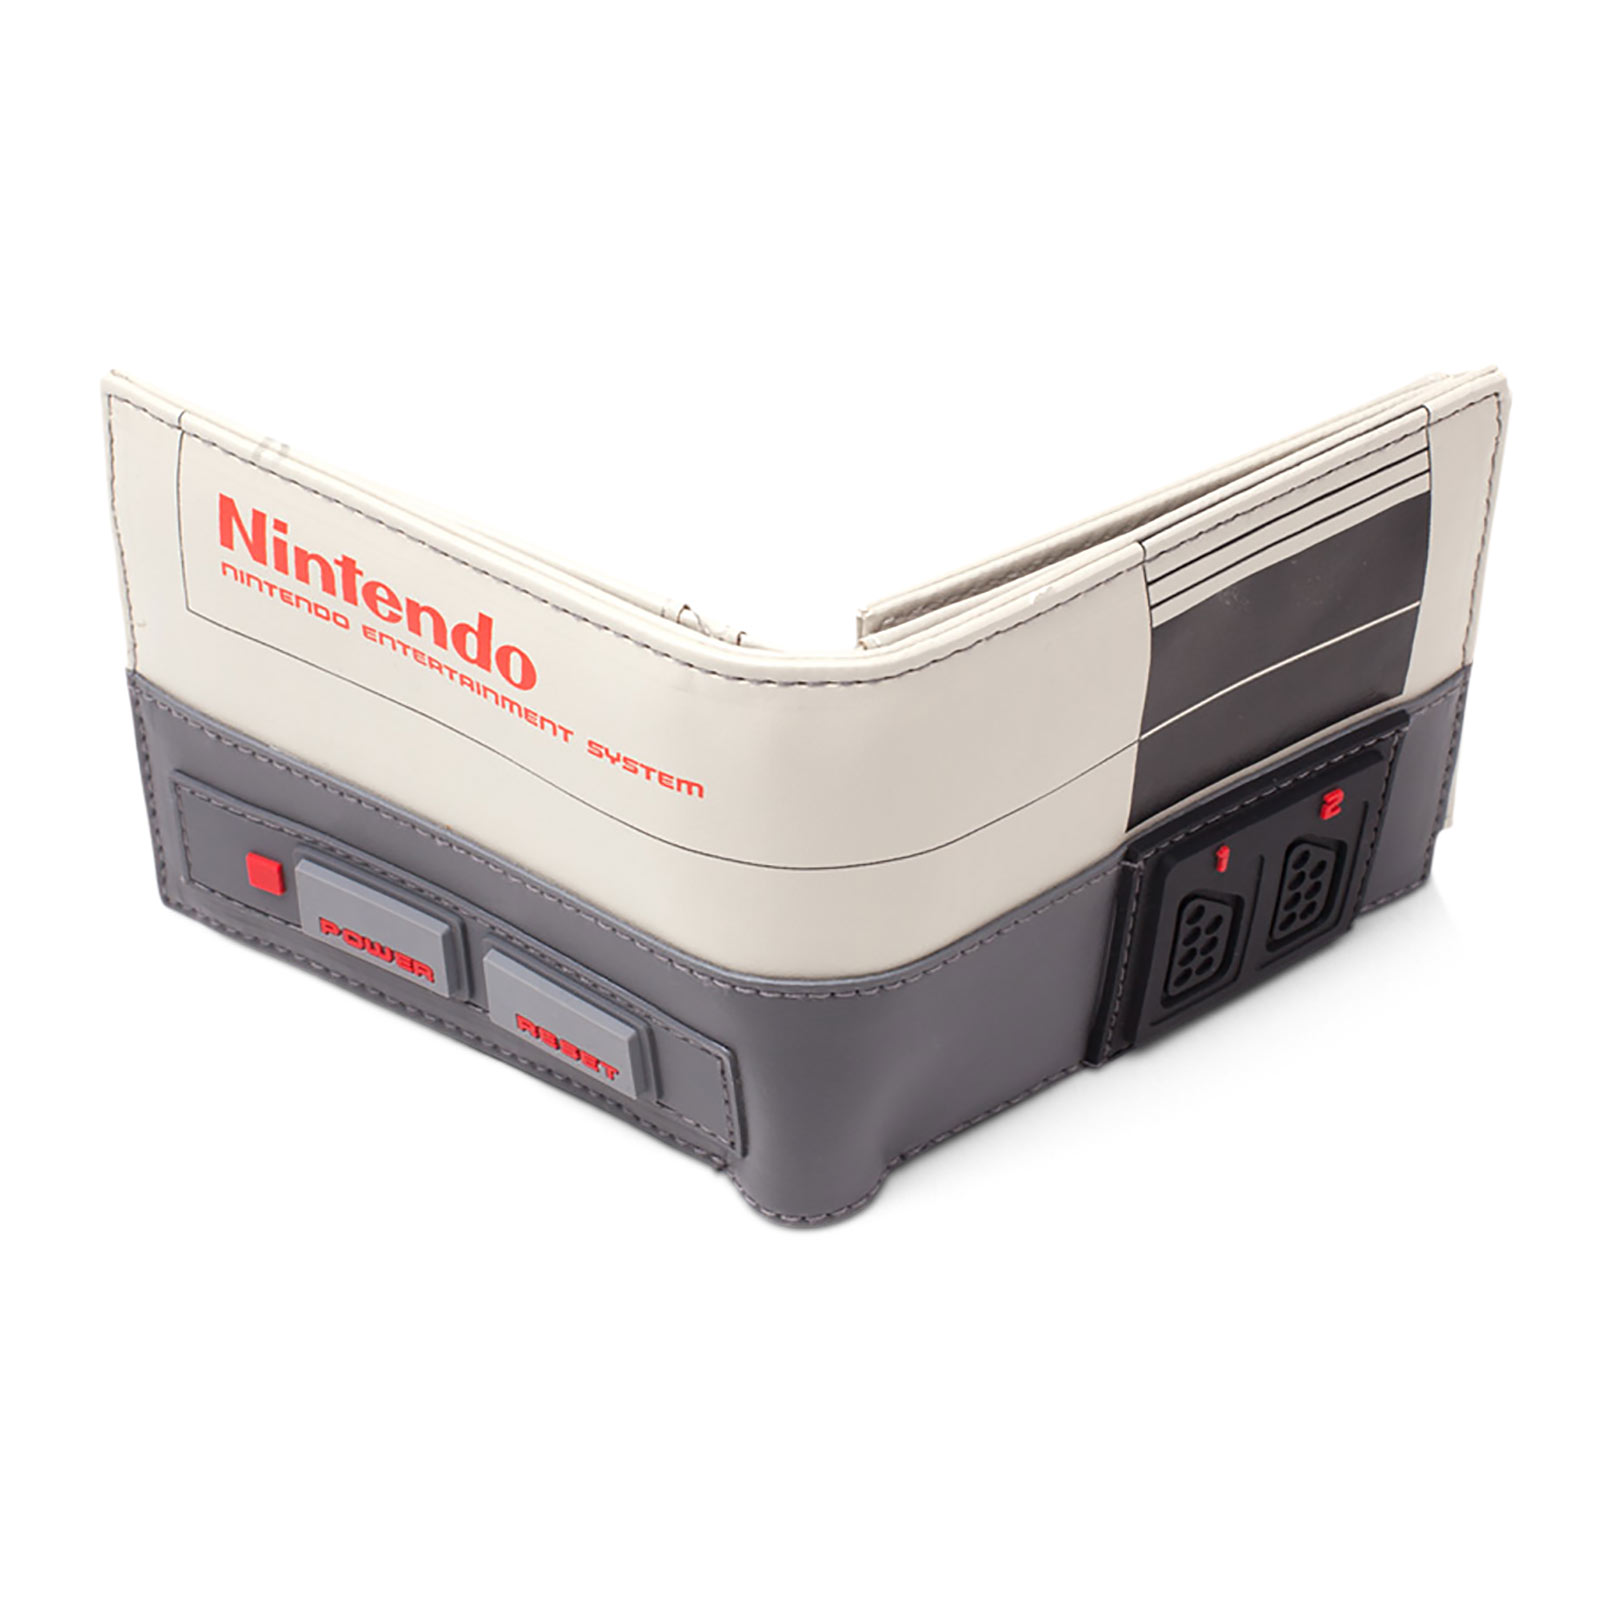 Nintendo - Portefeuille Console NES gris